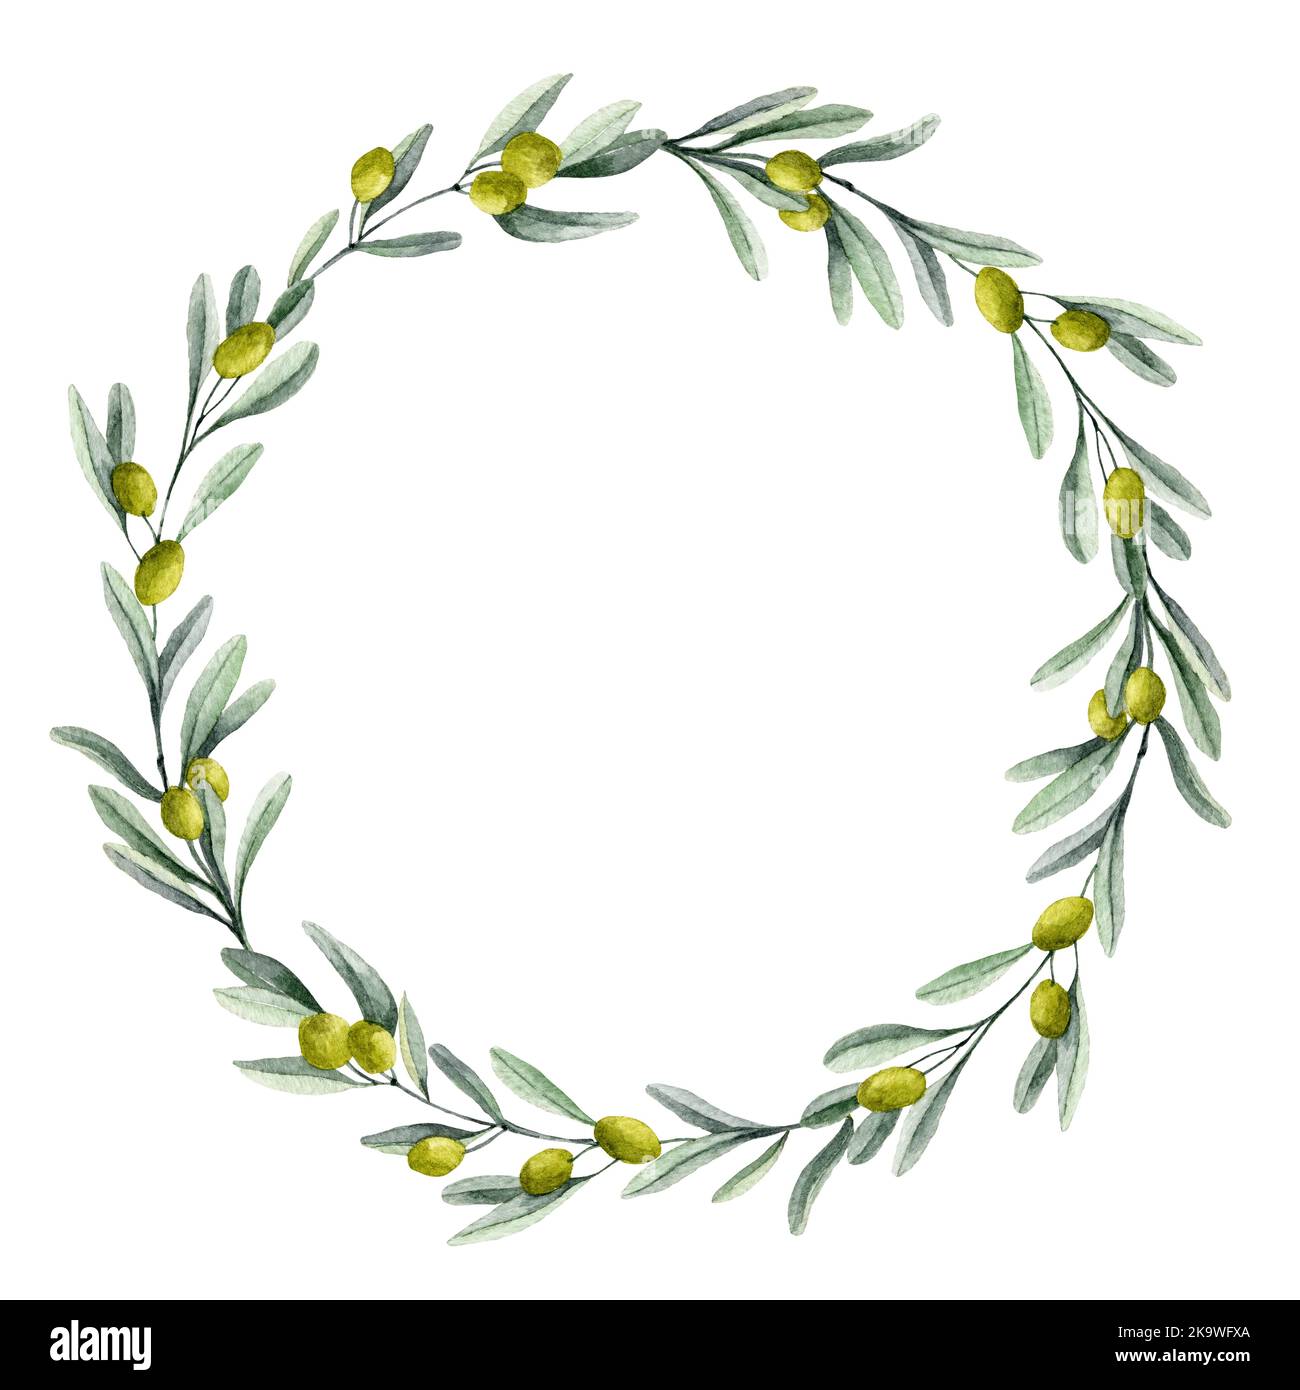 Corona di olive. Acquerello botanico cornice rotonda con rami Laurel per inviti di nozze o biglietti d'auguri. Bordo del cerchio floreale per l'etichetta dell'olio Foto Stock